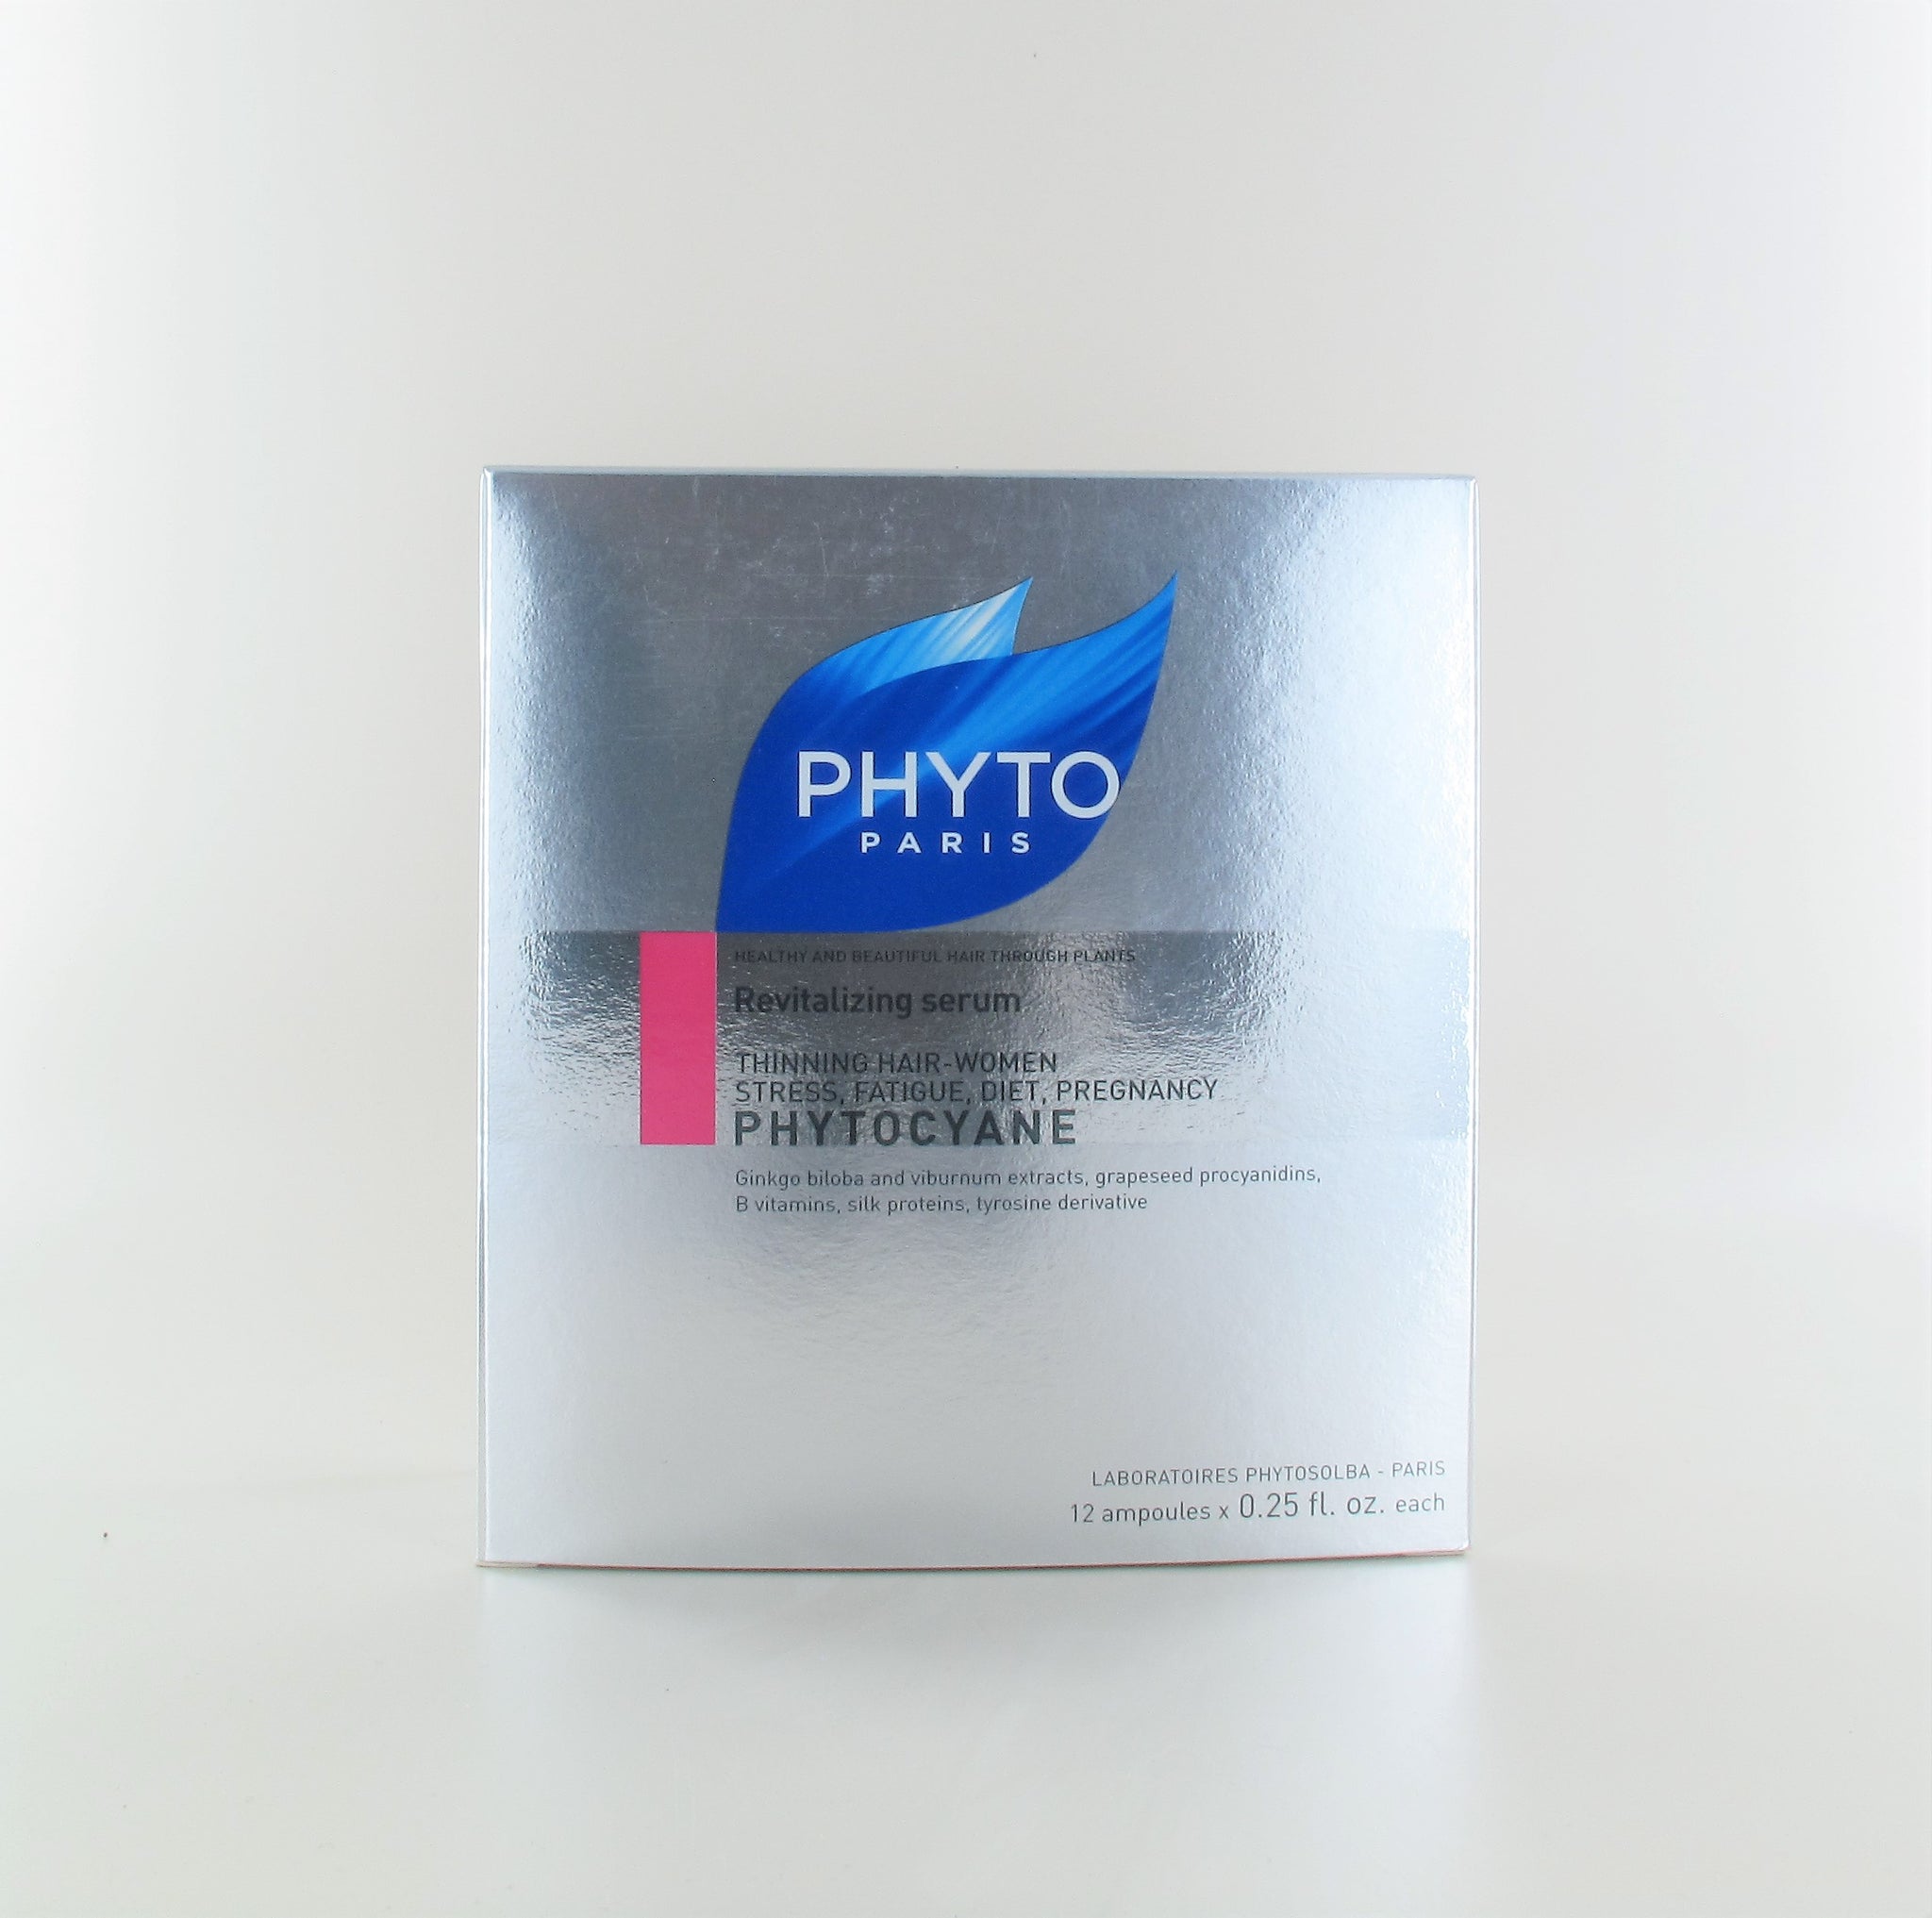 Phyto Paris Phytocyane Revitalizing Serum 12 x .25 Oz